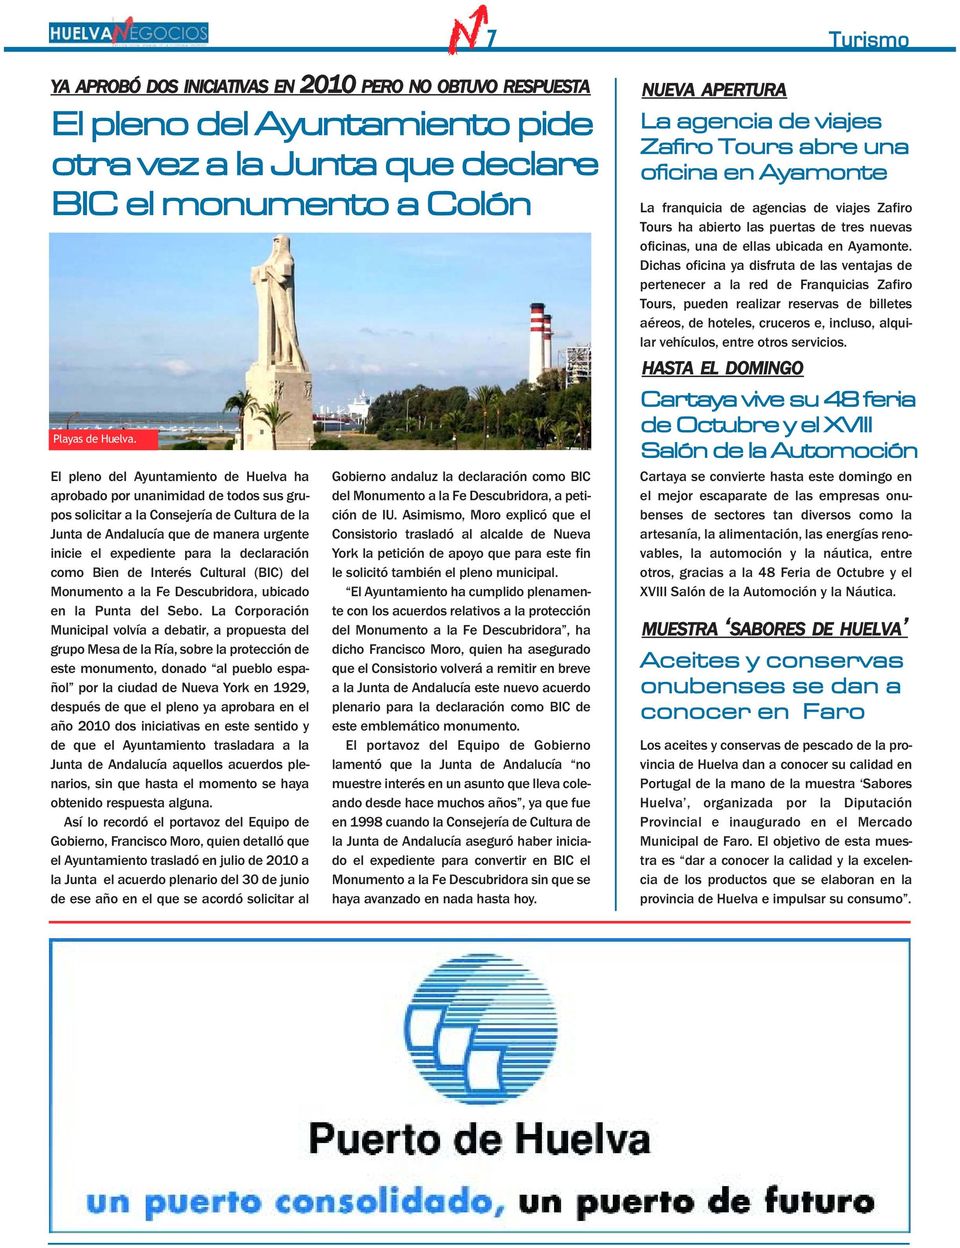 declaración como Bien de Interés Cultural (BIC) del Monumento a la Fe Descubridora, ubicado en la Punta del Sebo.